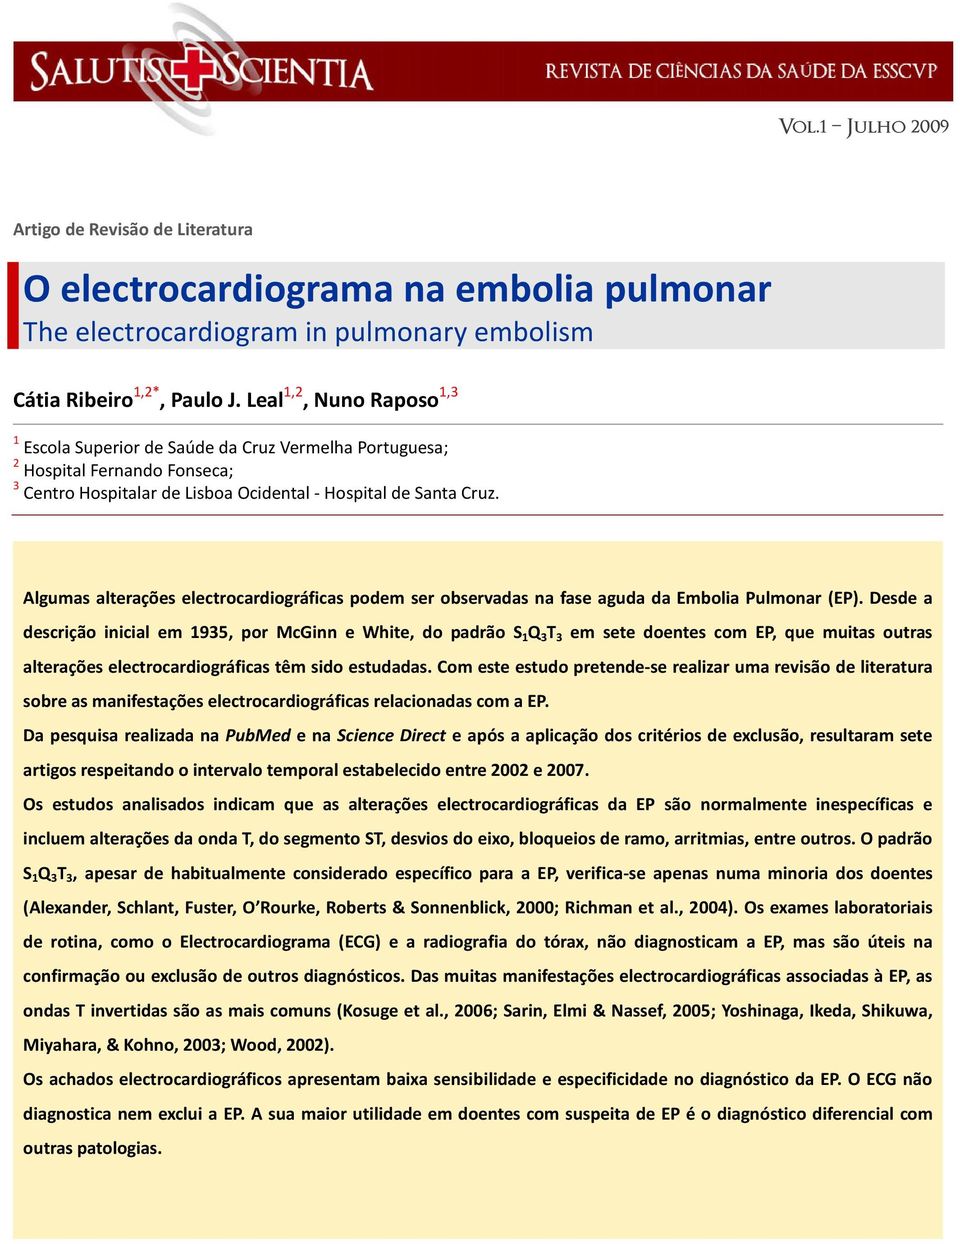 Algumas alterações electrocardiográficas podem ser observadas na fase aguda da Embolia Pulmonar (EP).